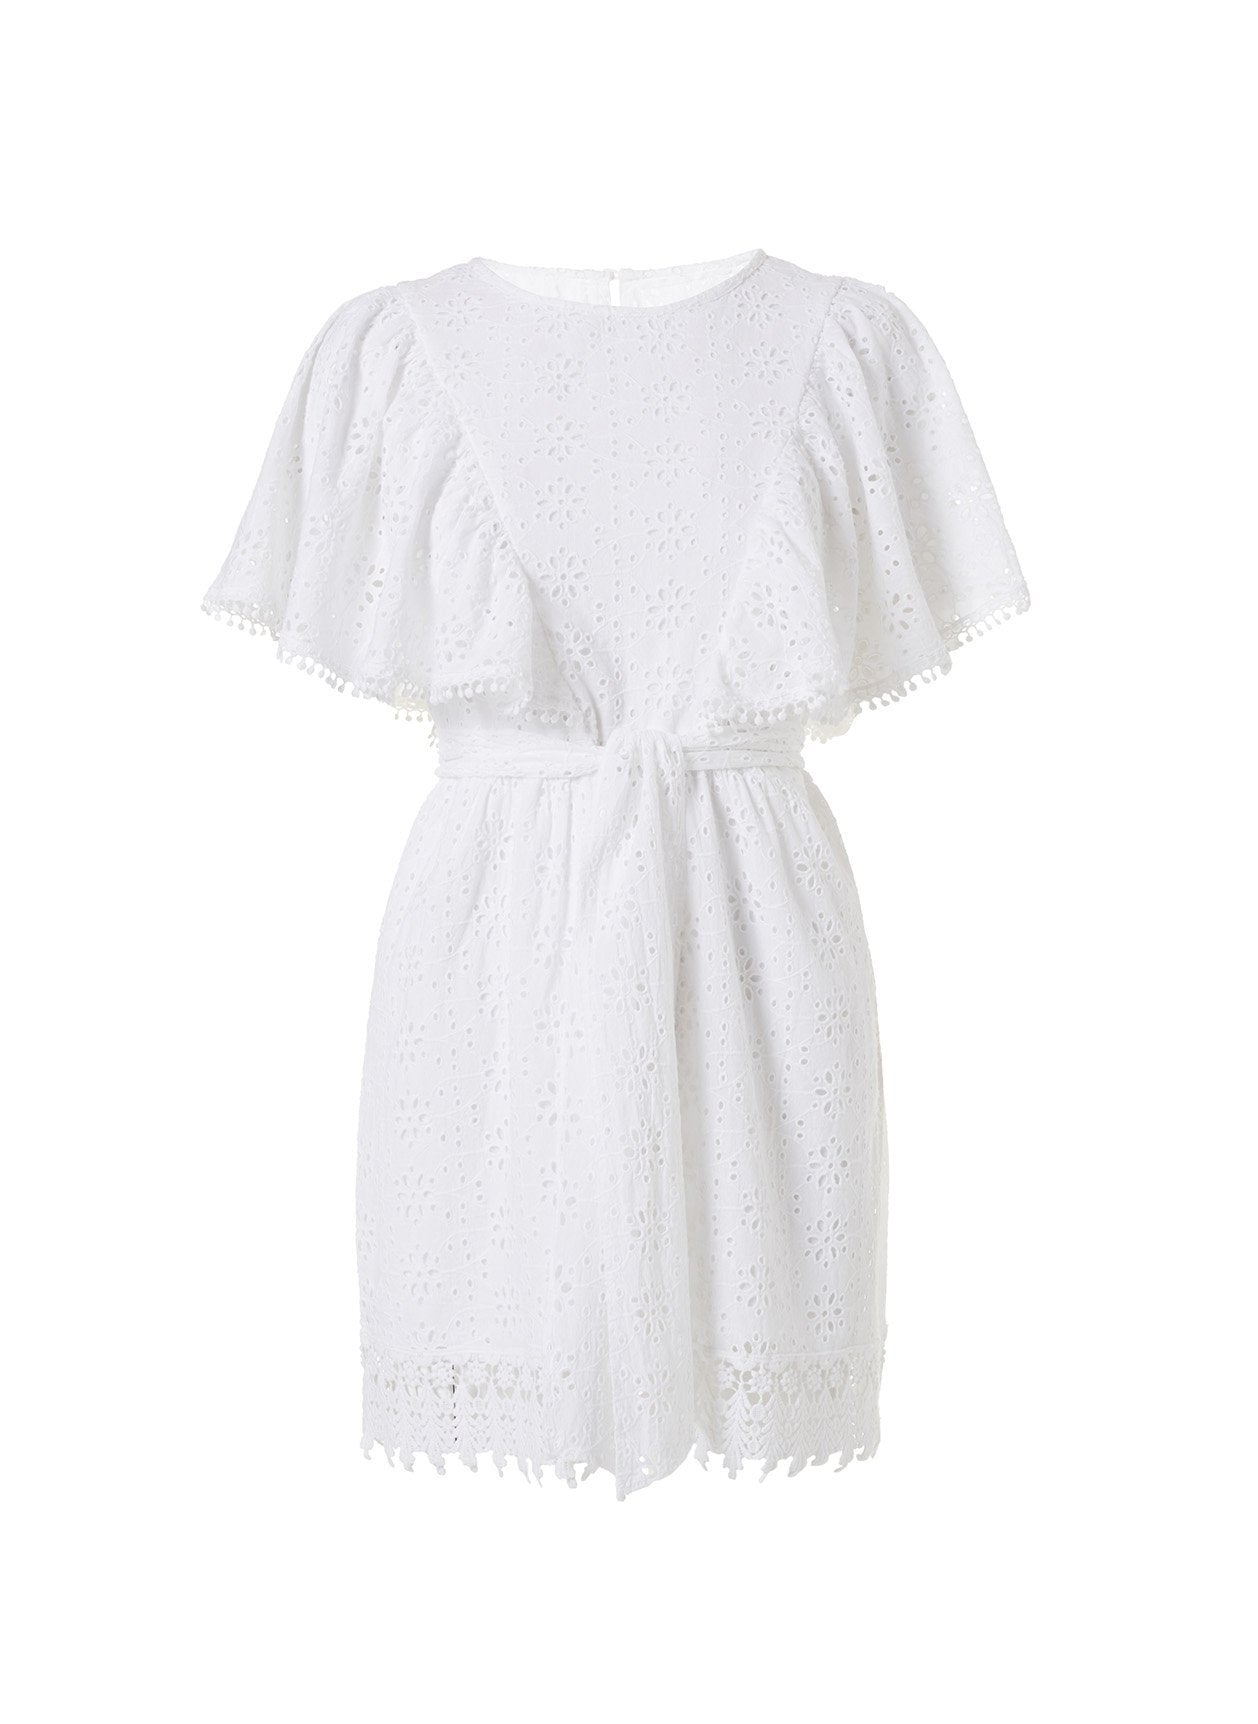 kara white short dress 